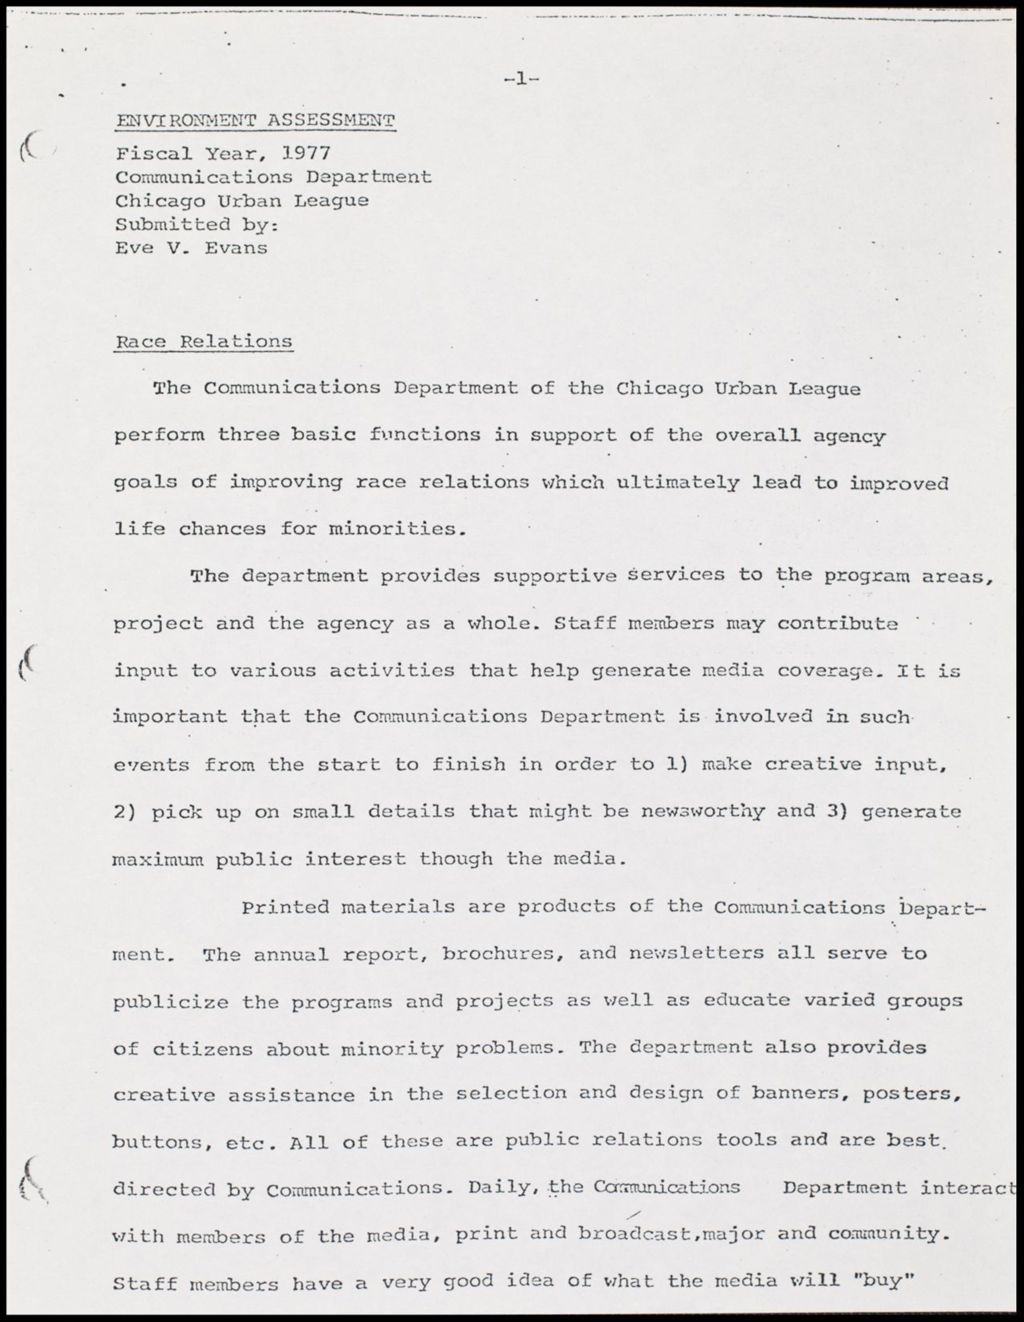 Communications Department Environmental Assessment, 1977 (Folder III-1837)